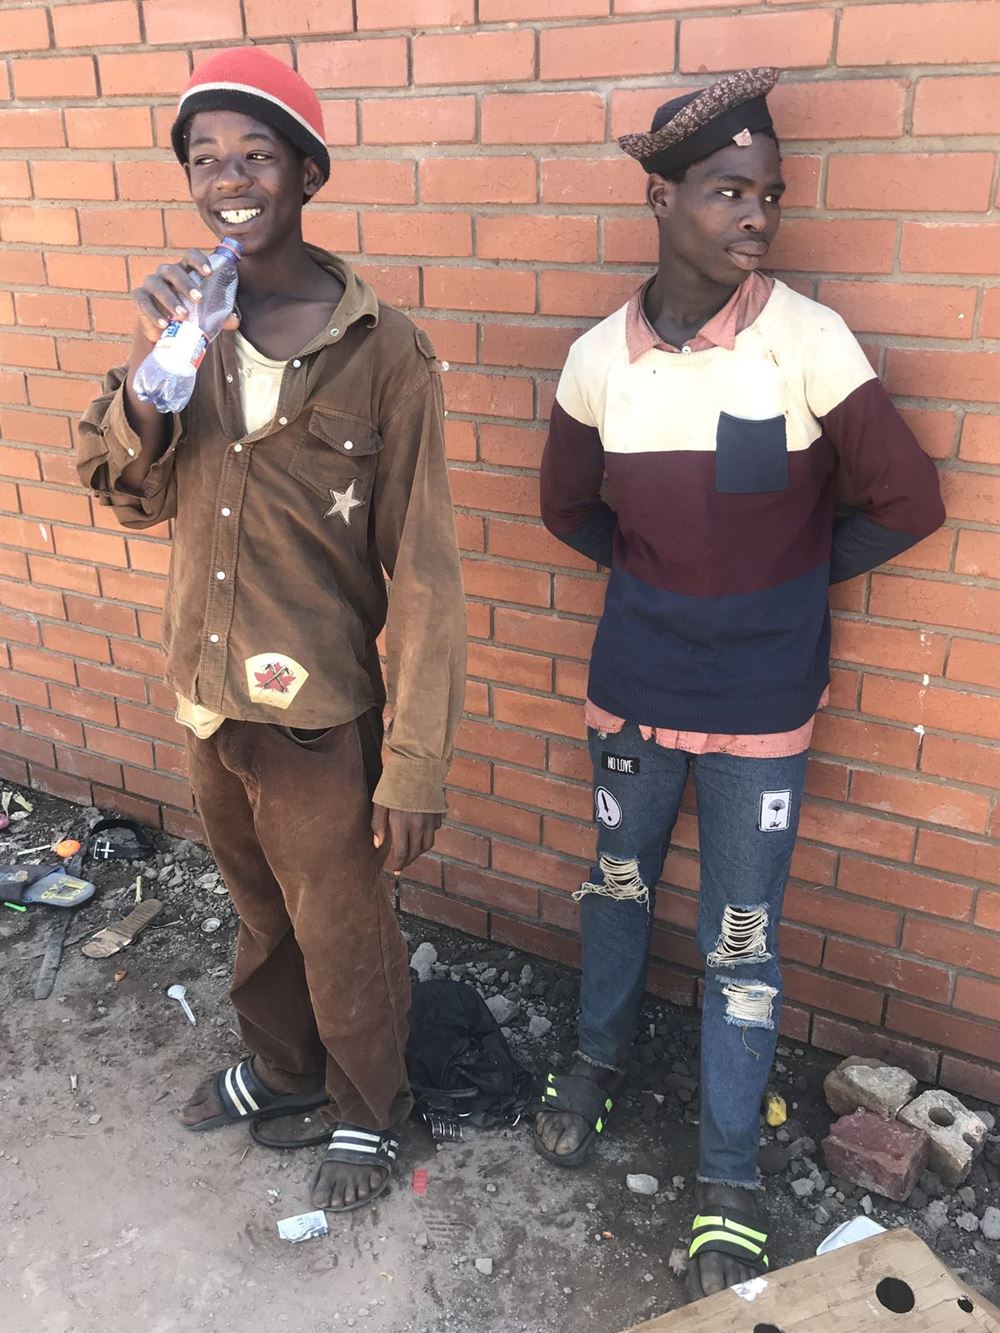 Reportage: Auf den Straßen von Südafrika; Foto: Zwei Straßenkinder vor einer Mauer  (Quelle: Sarah Plate / Kindernothilfe)